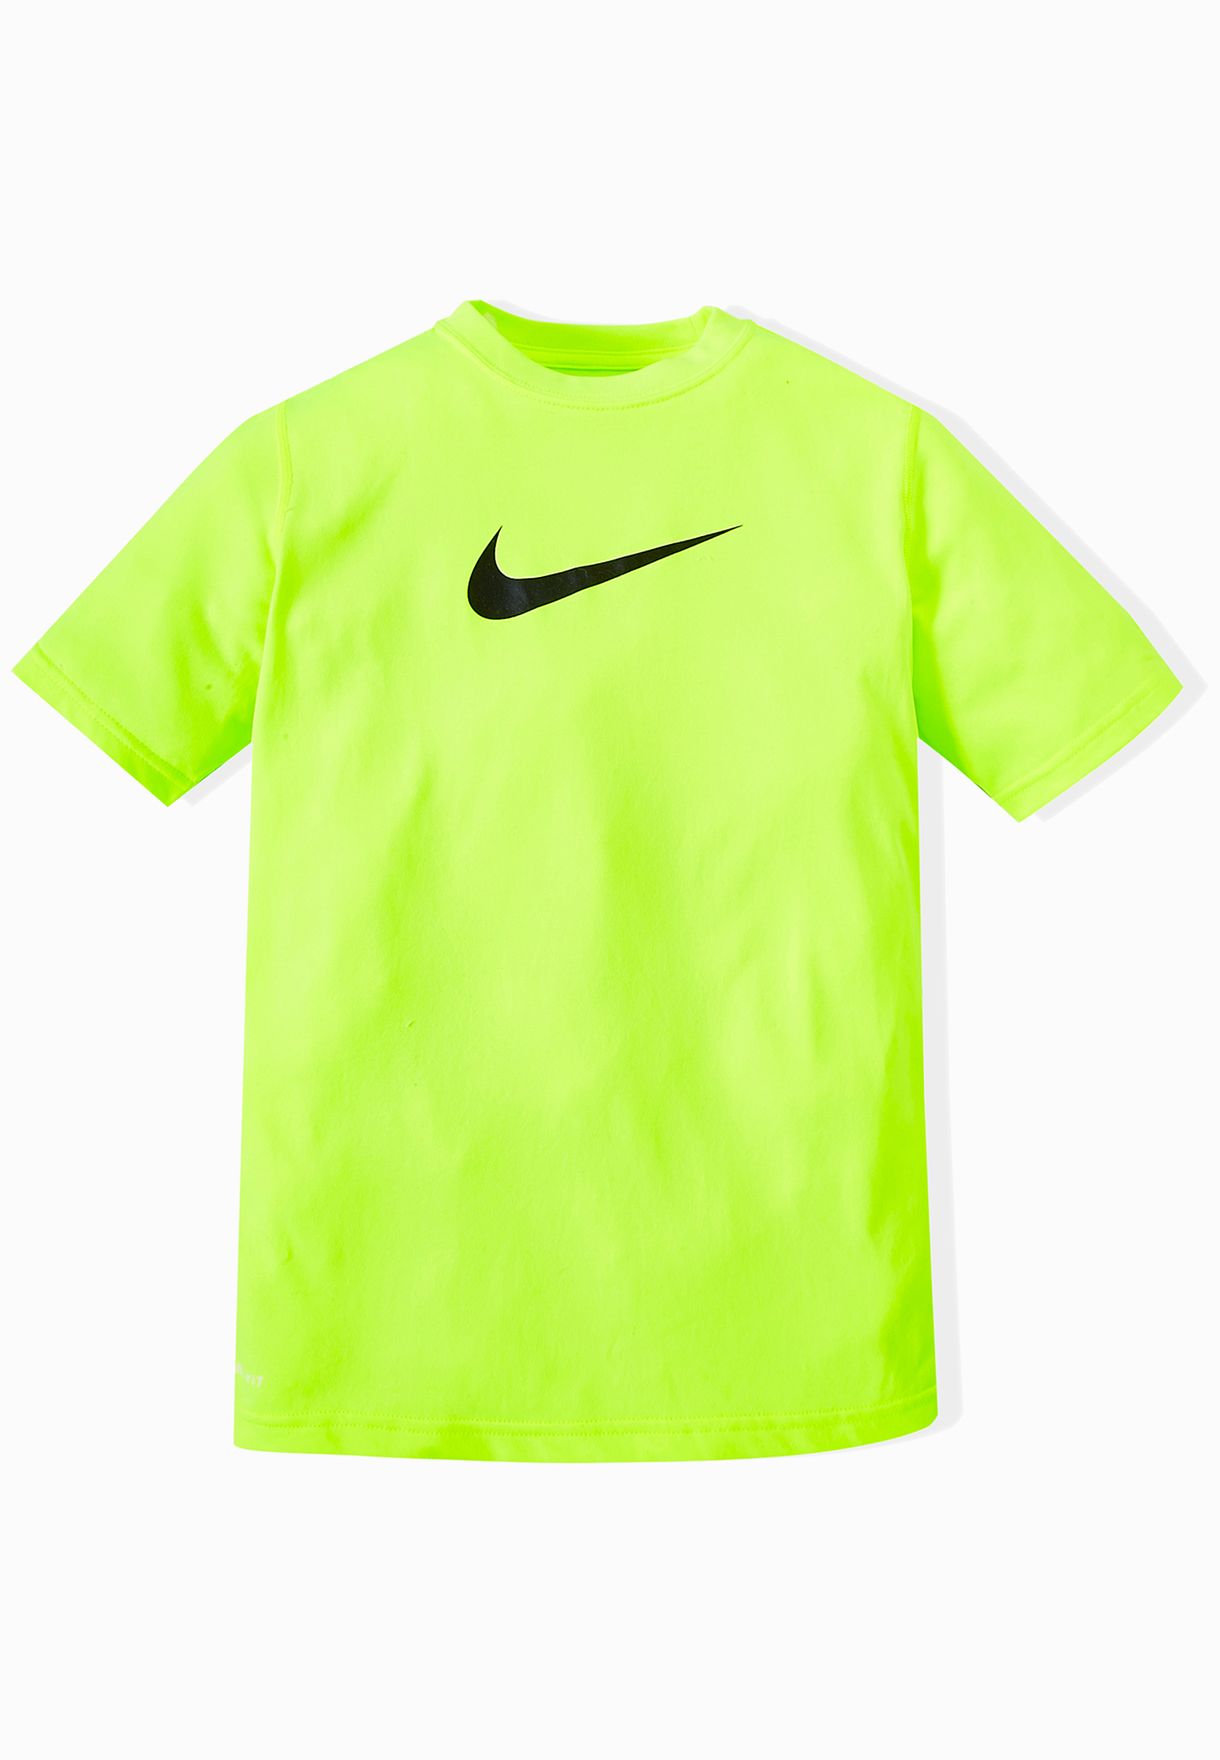 fluorescent green nike shirt